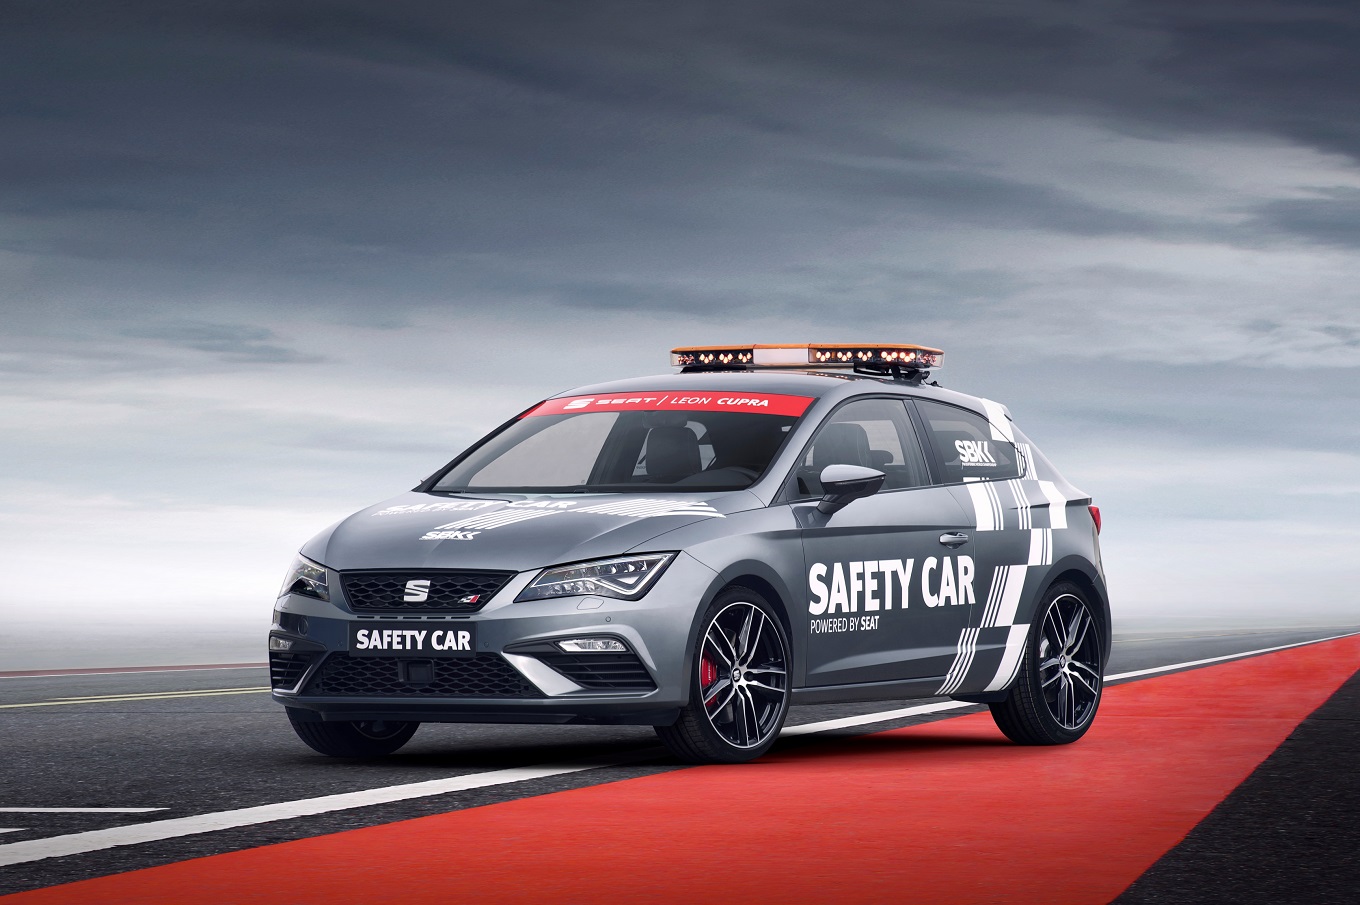 Seat Leon Cupra впервые стал автомобилем безопасности на международных соревнованиях